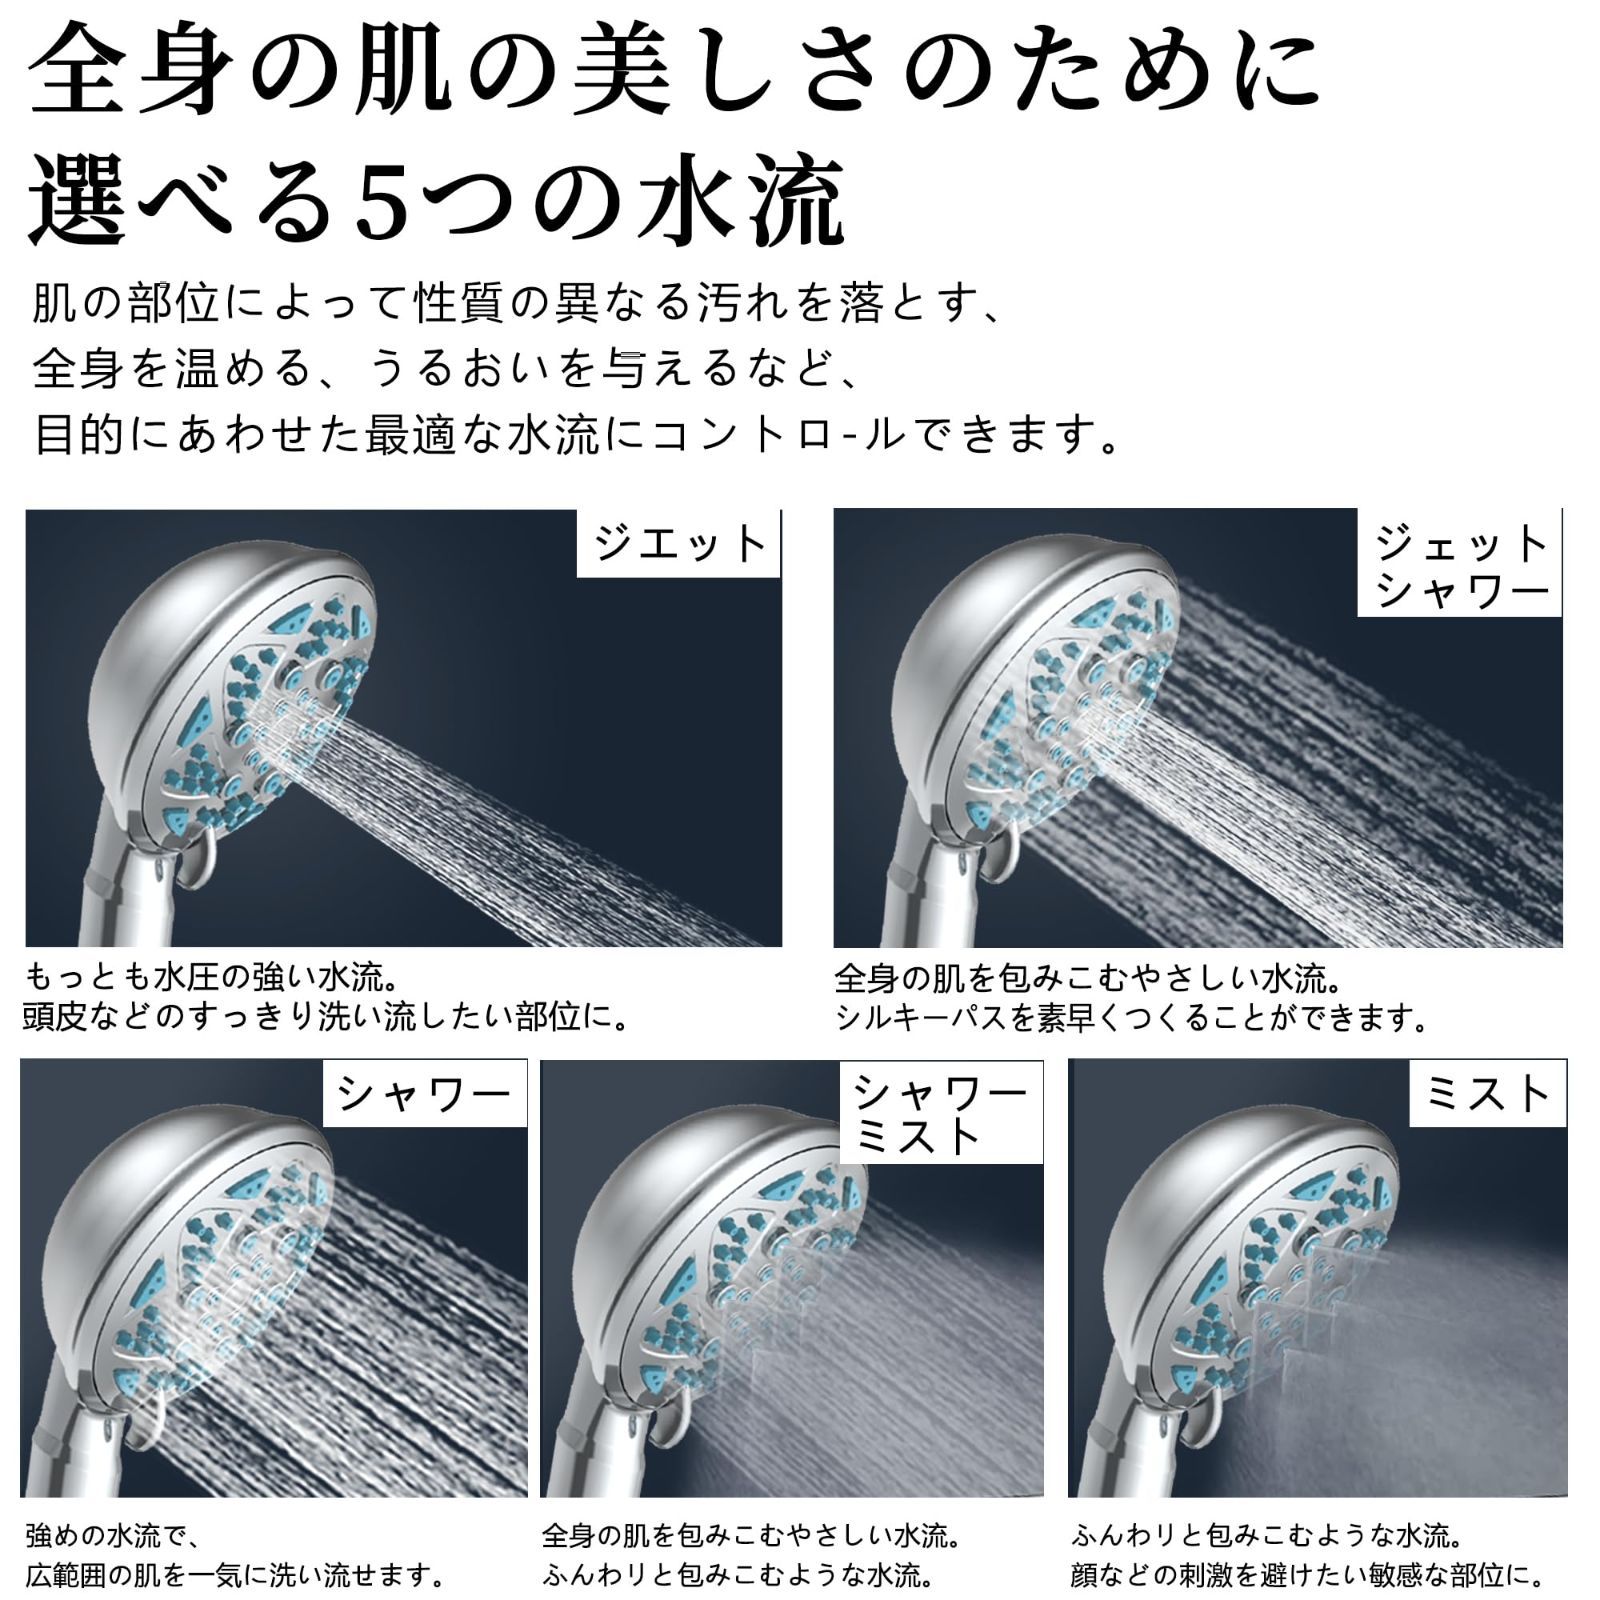 シャワーヘッド 節水 マイクロバブル ナノバブル５段階シャワーモードミスト